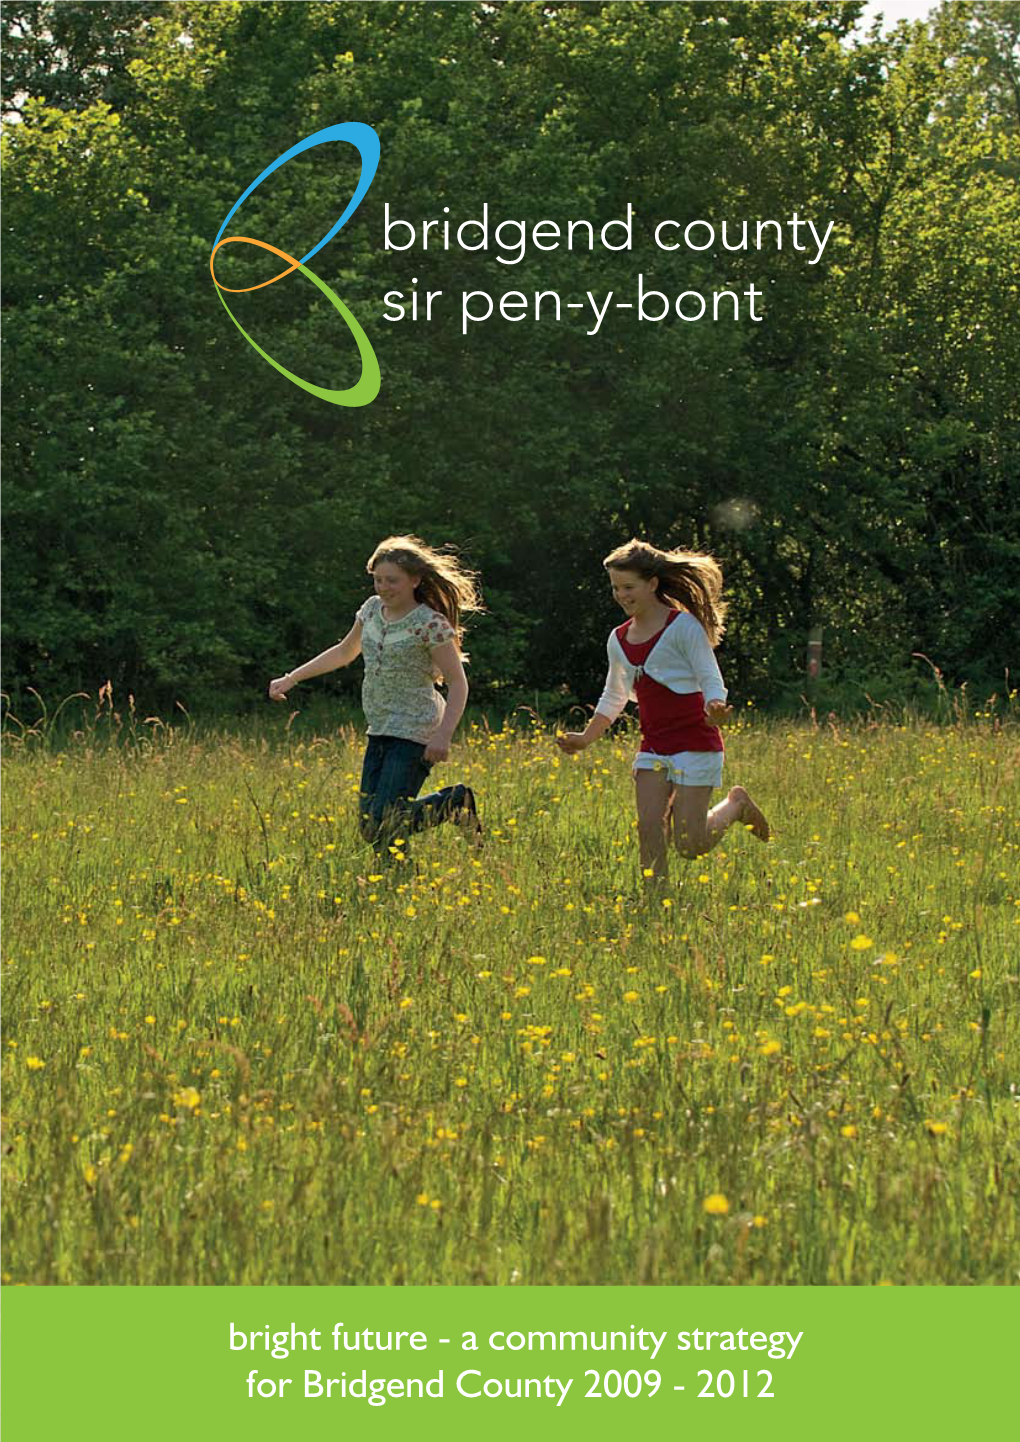 A Community Strategy for Bridgend County 2009 - 2012 Bright Future